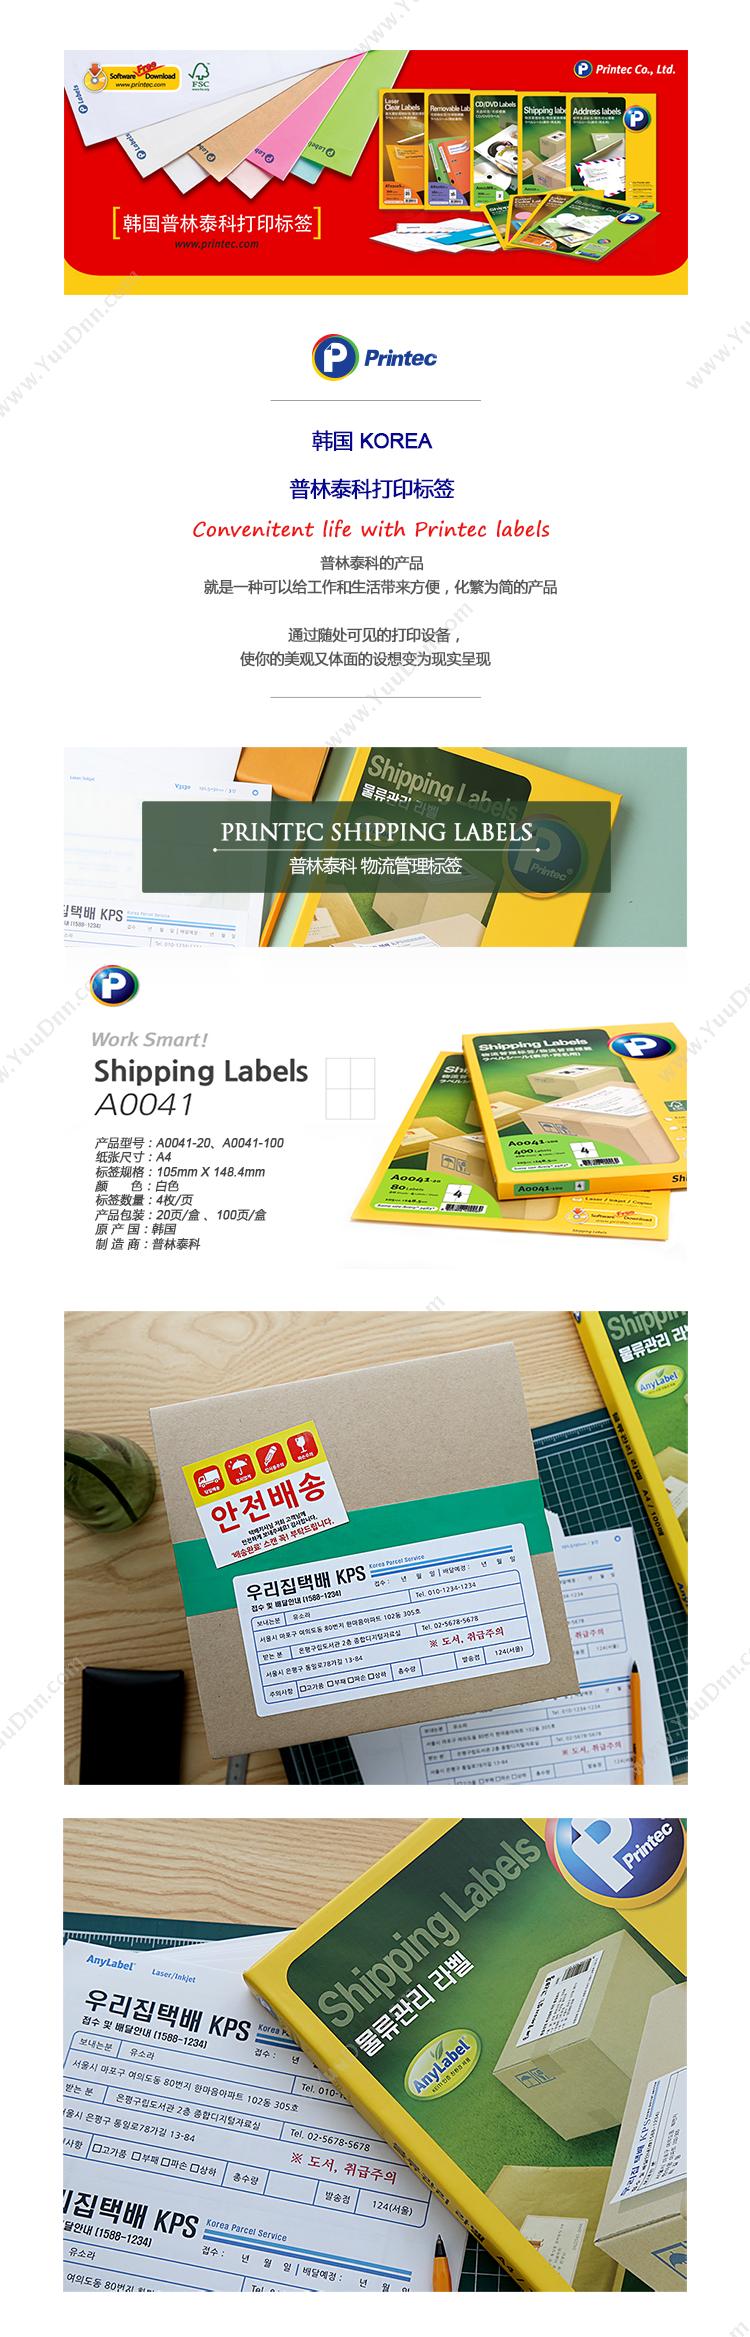 普林泰科 Printec 普林泰科 A0041-20 物流管理标签 105x148.5mm 4枚/页 激光打印标签